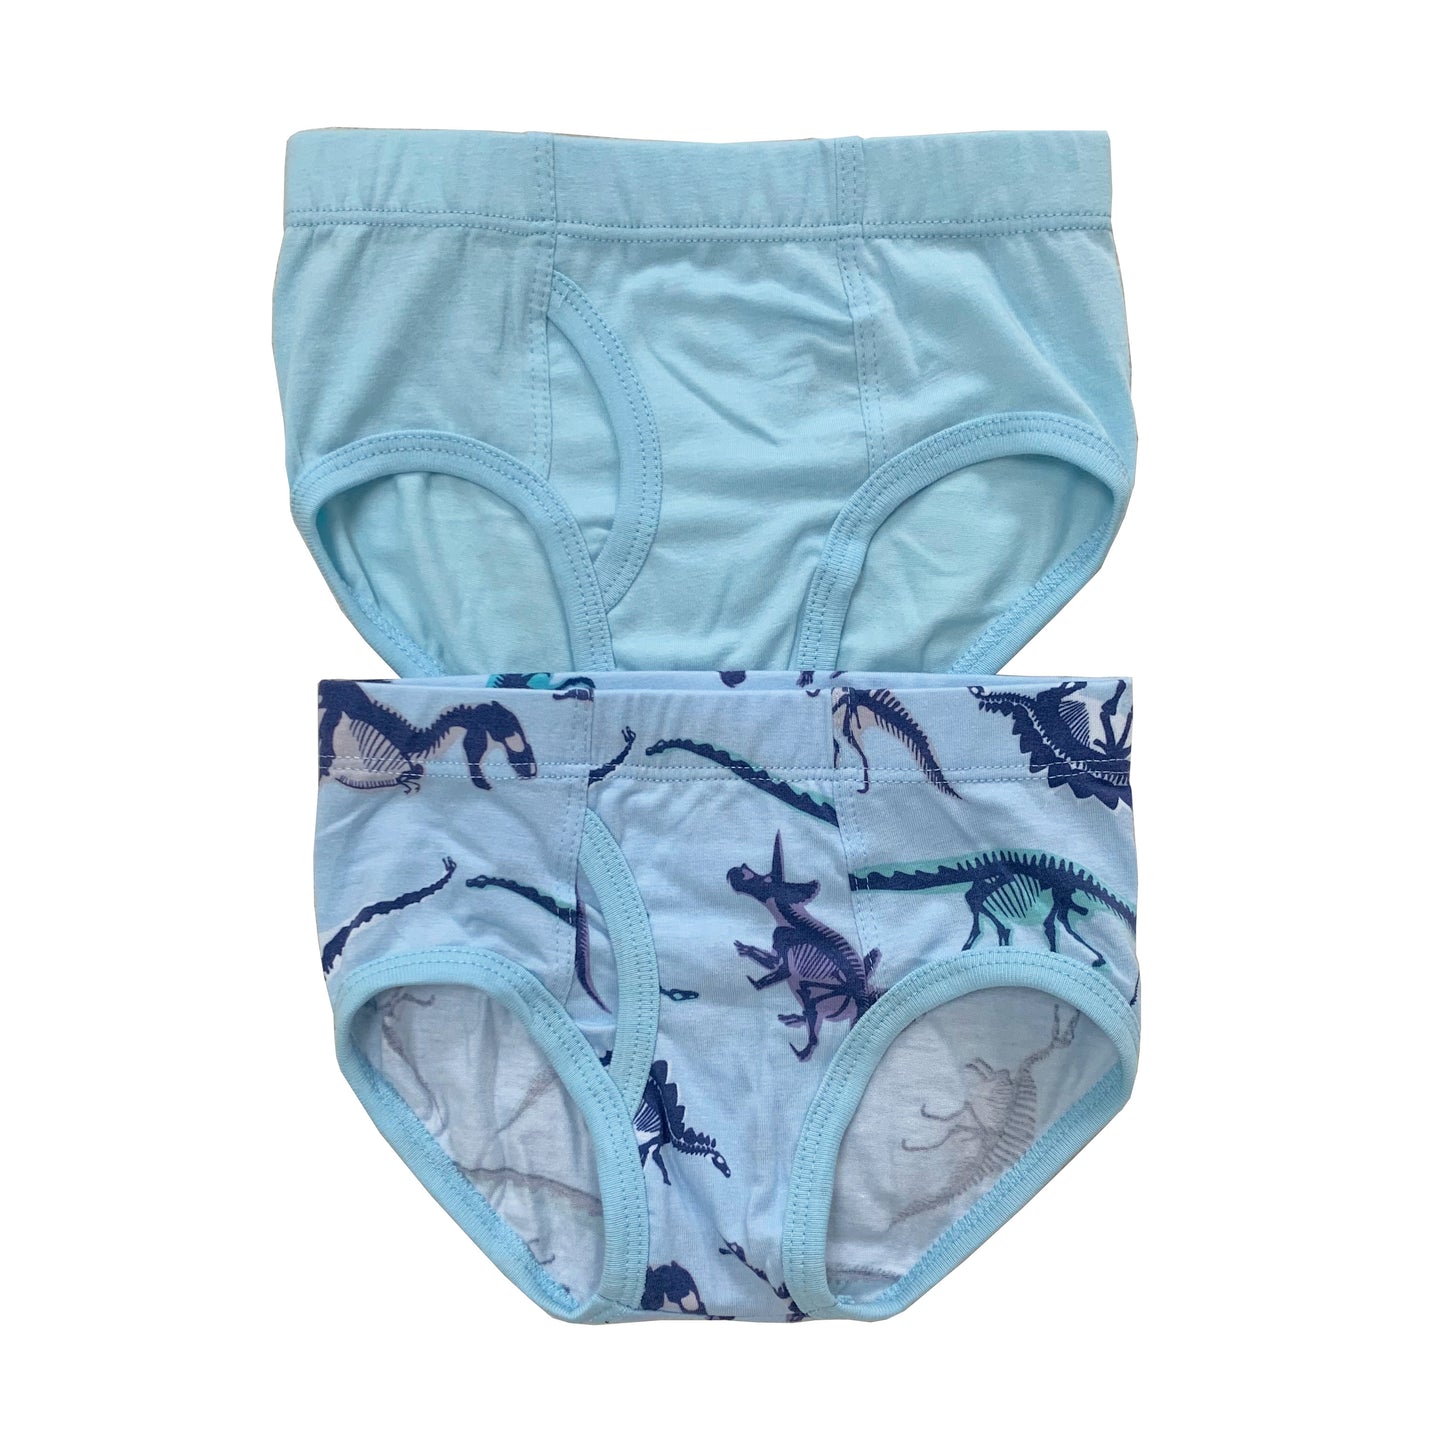 B008 Esme Boys 2pcs Briefs Underwear in Patterns